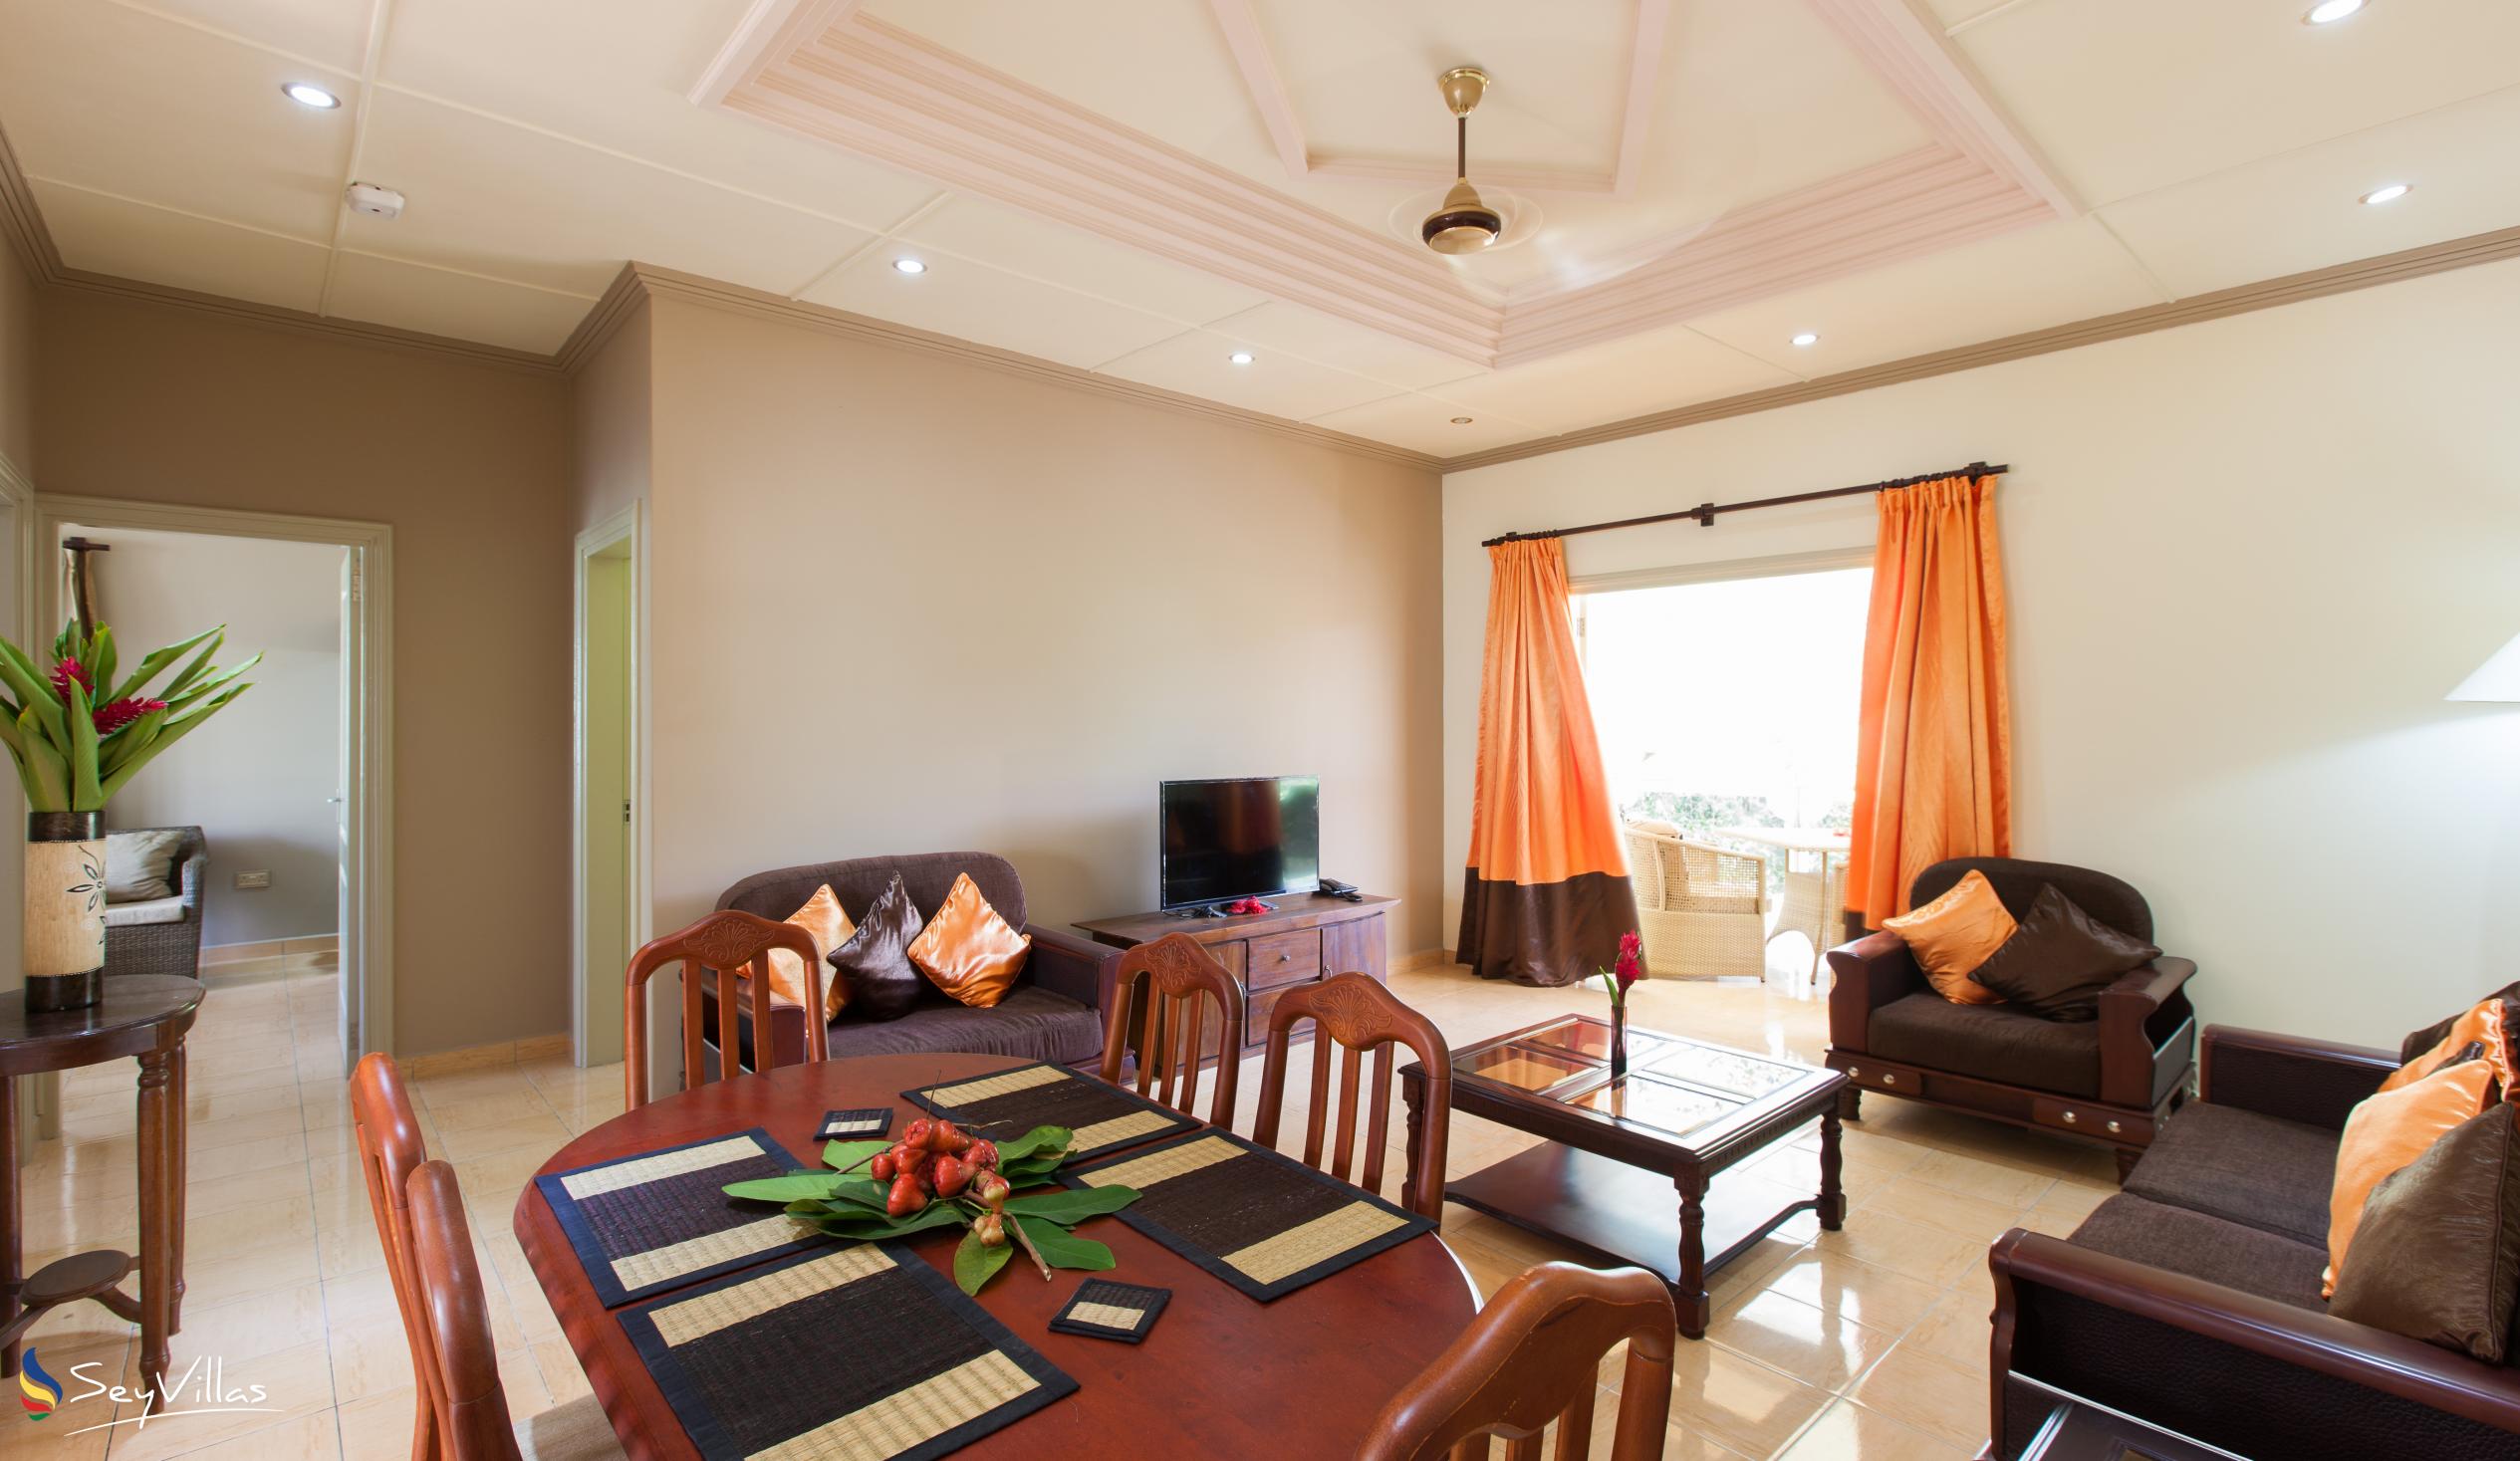 Foto 35: Chez Bea Villa - Appartamento con 2 camere - Praslin (Seychelles)